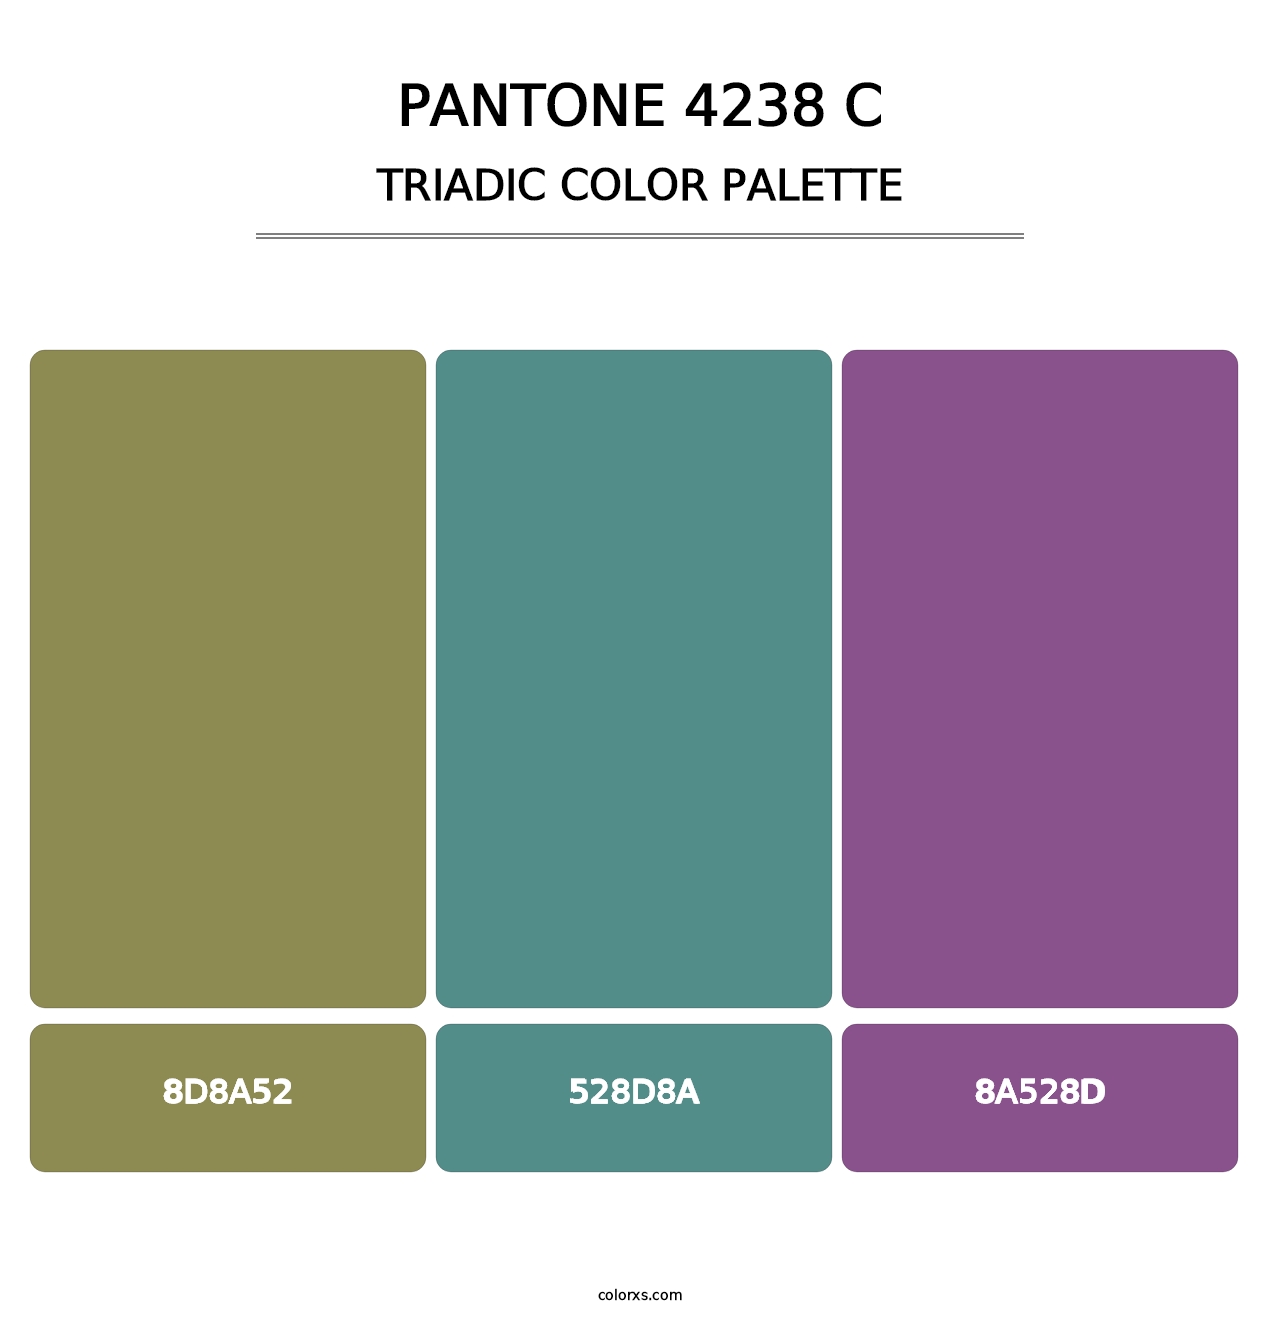 PANTONE 4238 C - Triadic Color Palette